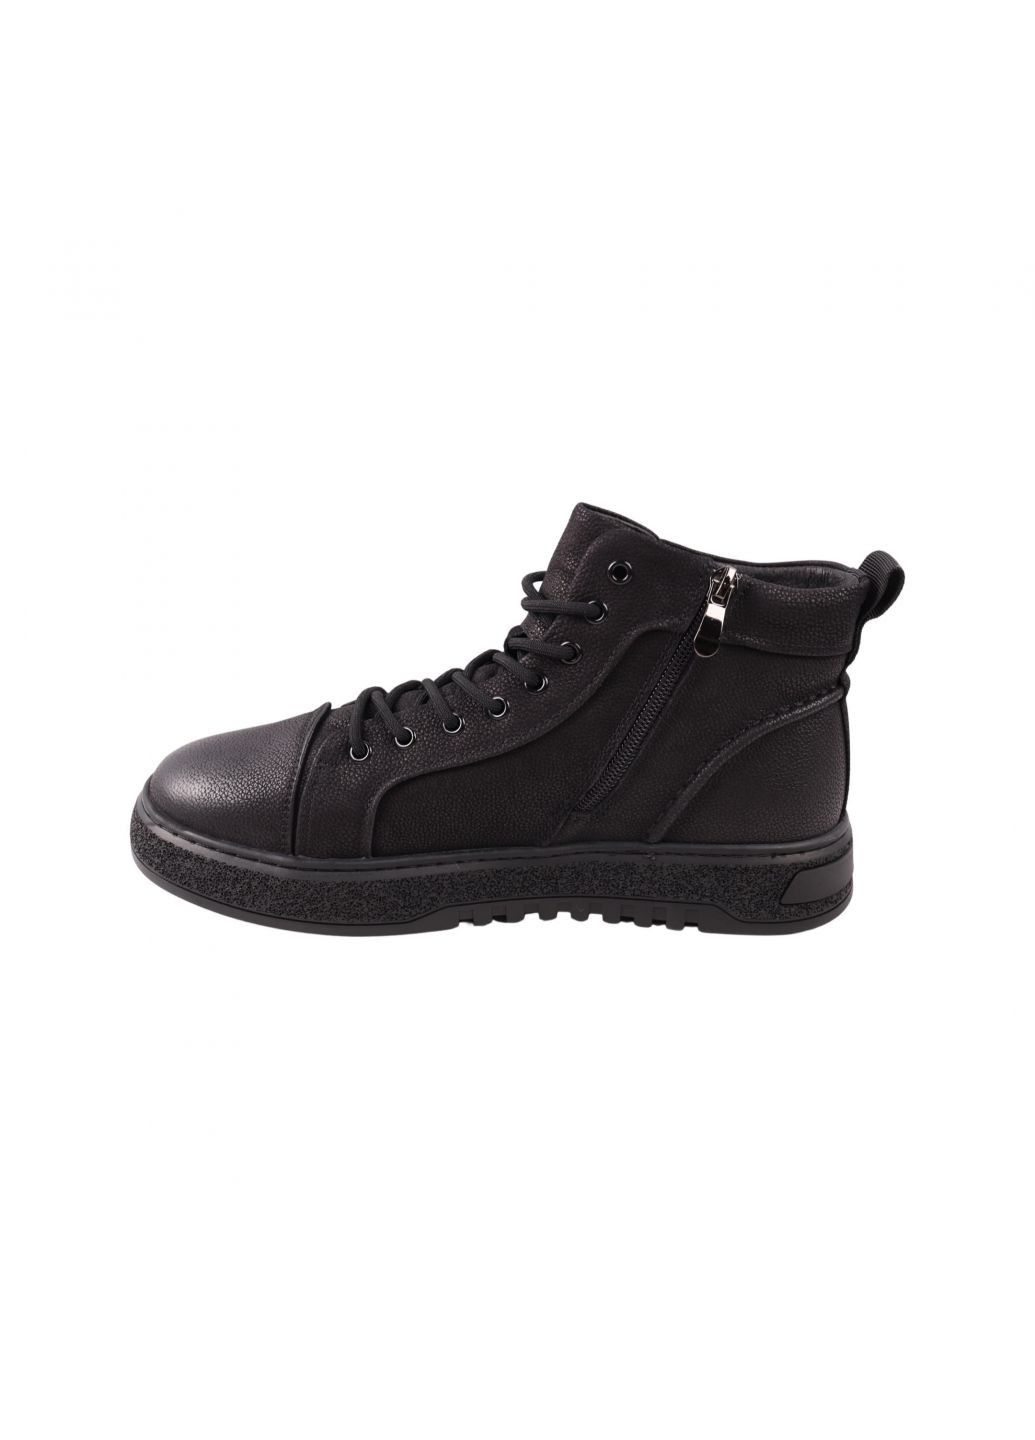 Черные ботинки мужские черные натуральный нубук Lifexpert